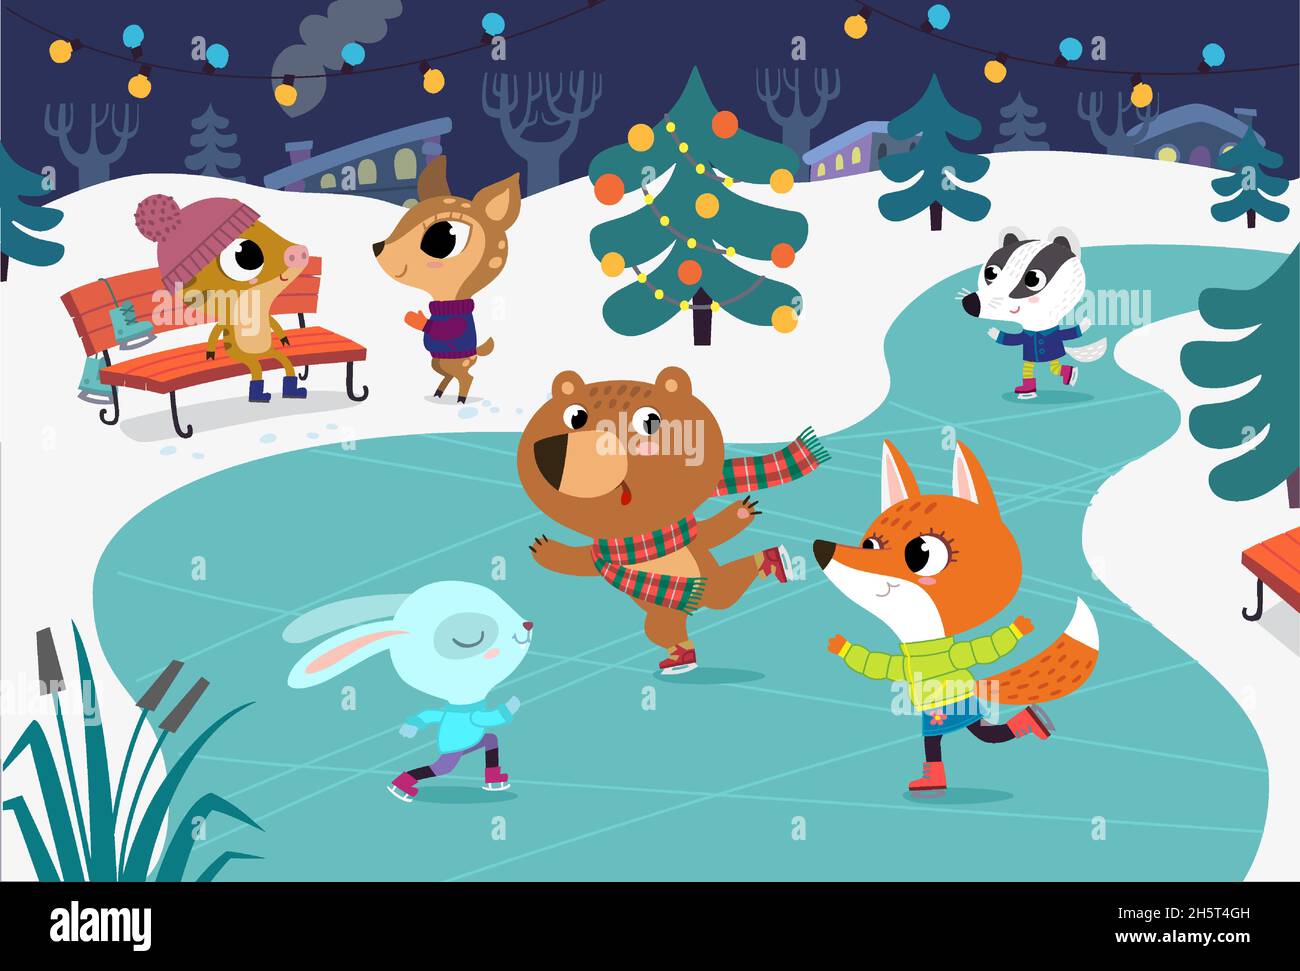 Cute animali del bambino pattinare sul fiume congelato. I bambini si divertono in inverno. La volpe, il coniglio, il badger e l'orso si divertono nella pista di pattinaggio su ghiaccio. Vacanze invernali Illustrazione Vettoriale